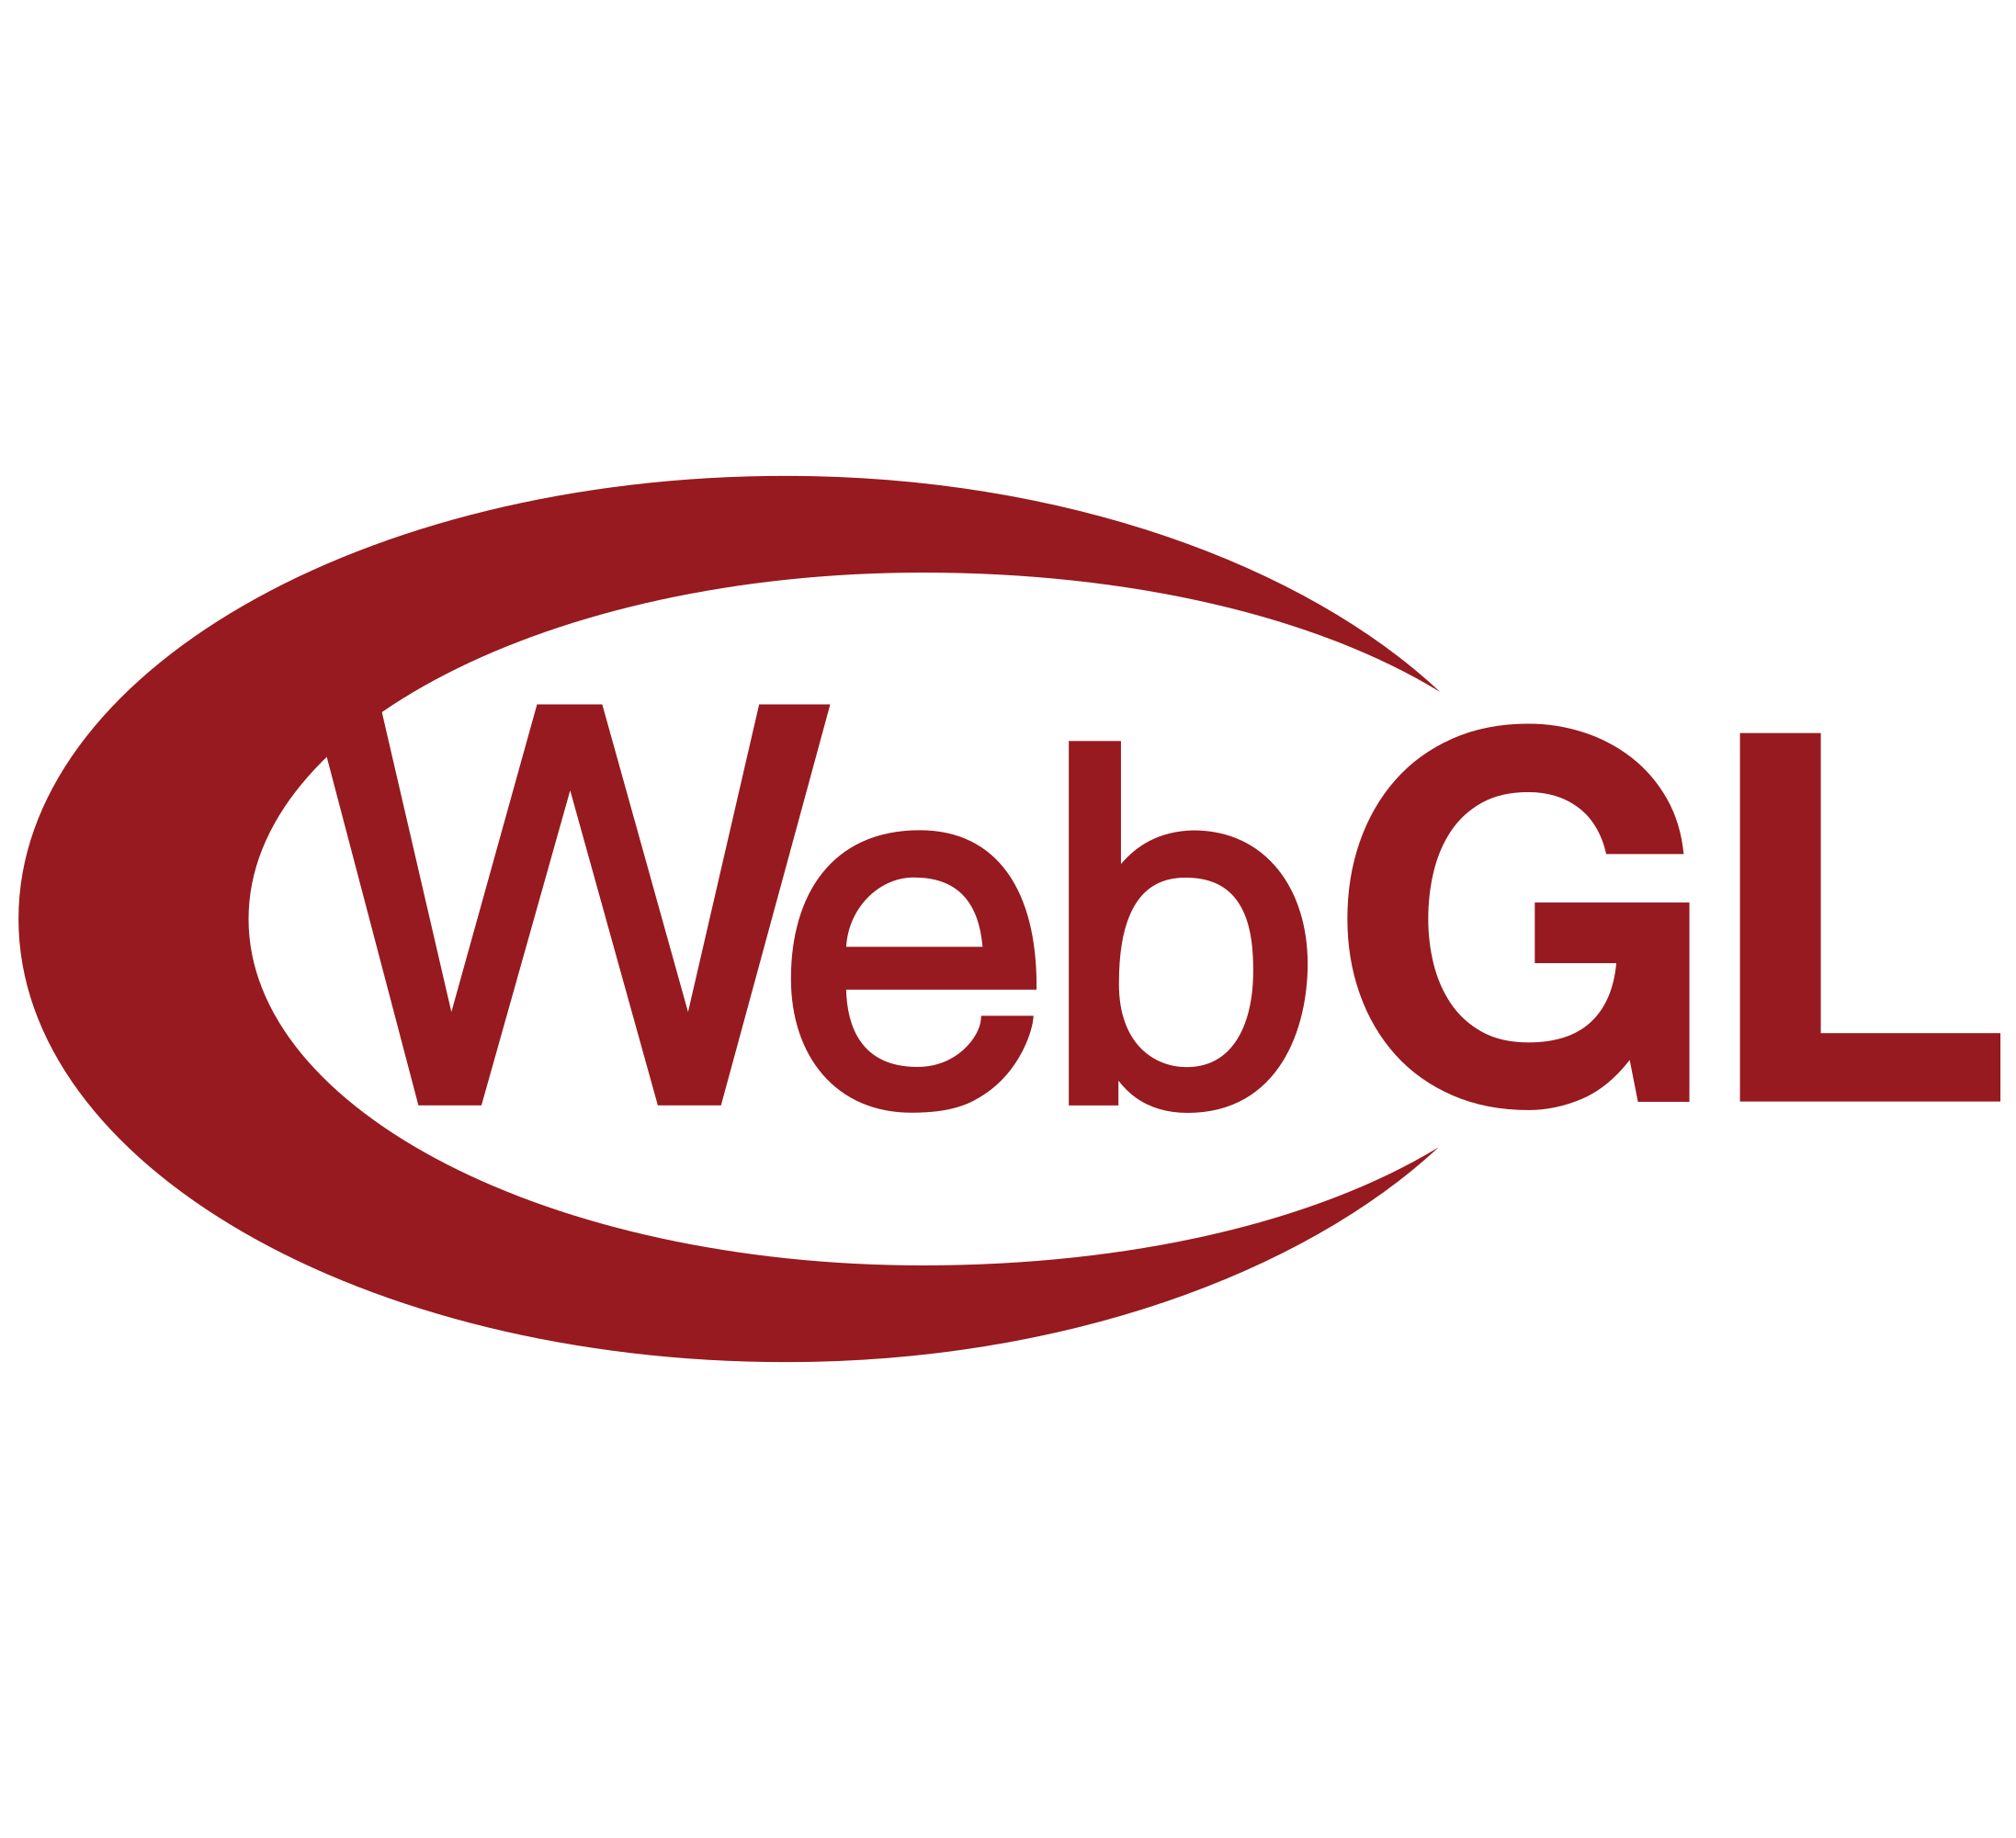 WebGL játékok